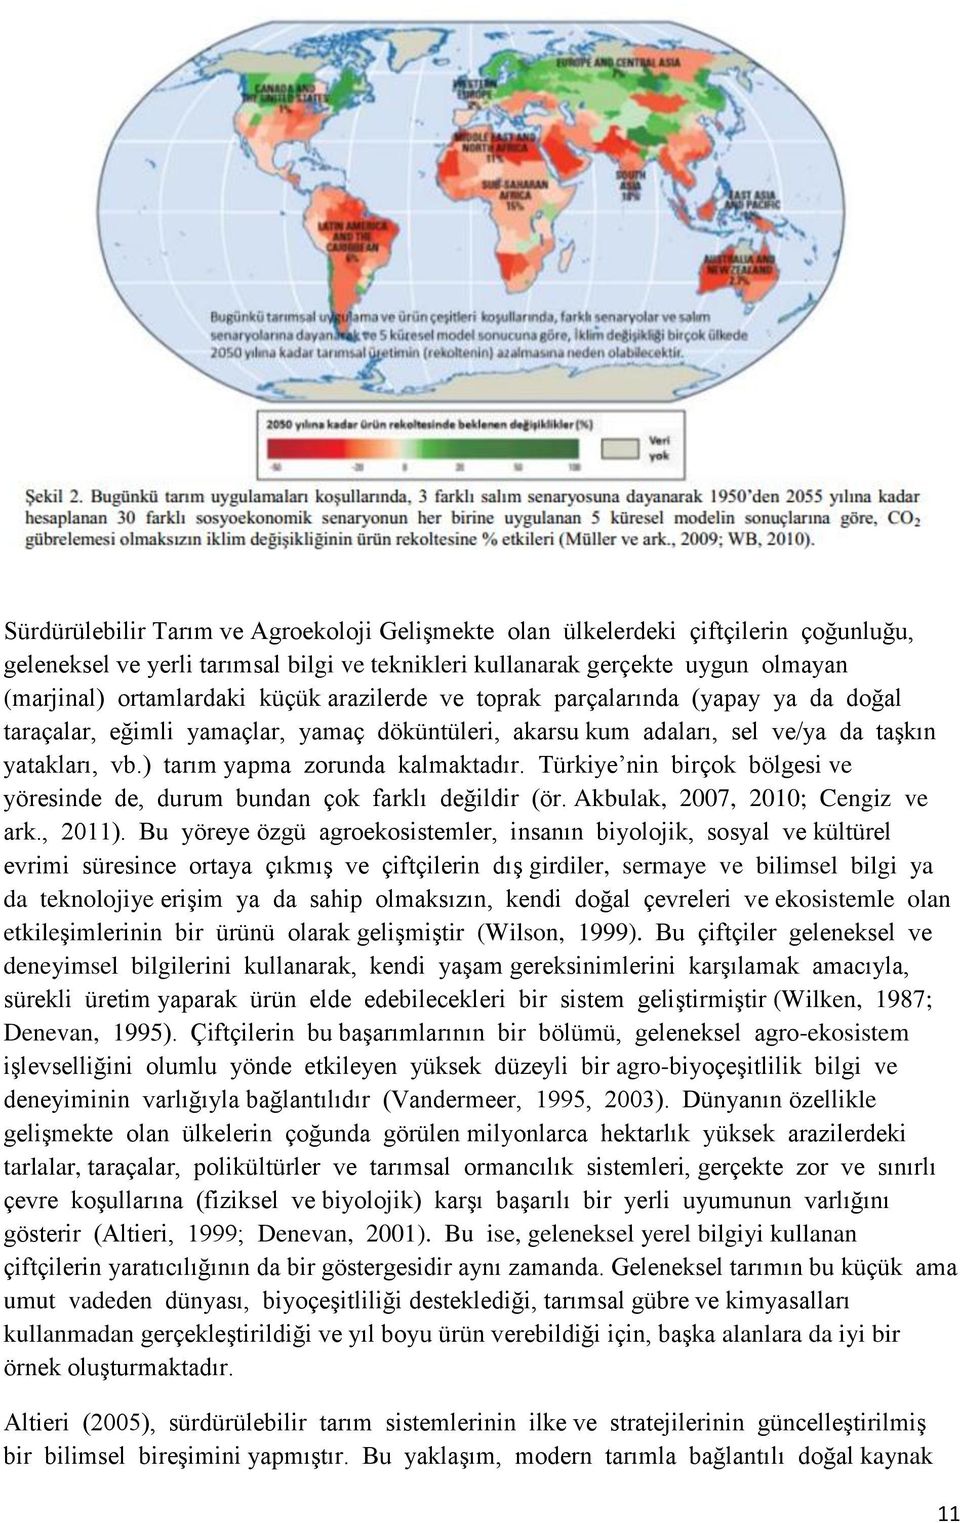 Türkiye nin birçok bölgesi ve yöresinde de, durum bundan çok farklı değildir (ör. Akbulak, 2007, 2010; Cengiz ve ark., 2011).